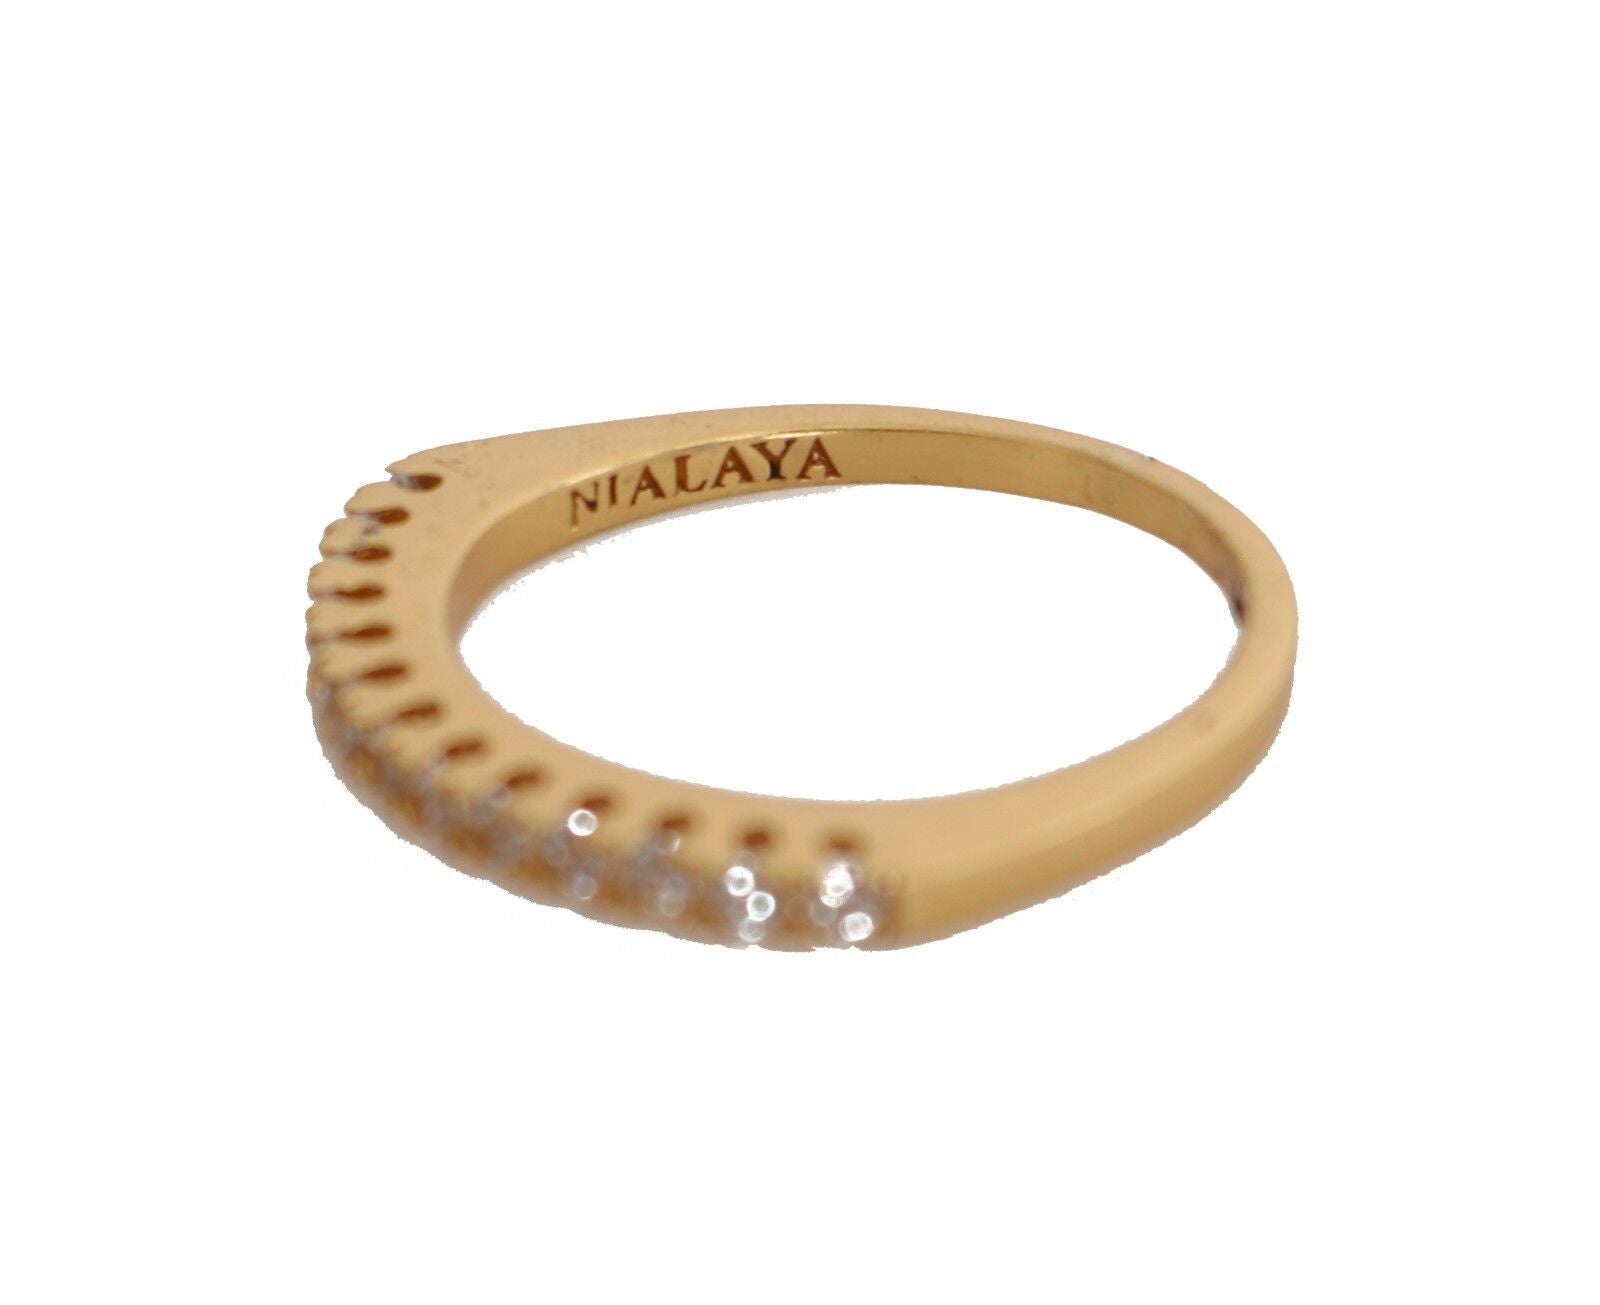 Nialaya златен автентичен дамски прозрачен CZ злато 925 сребърен пръстен